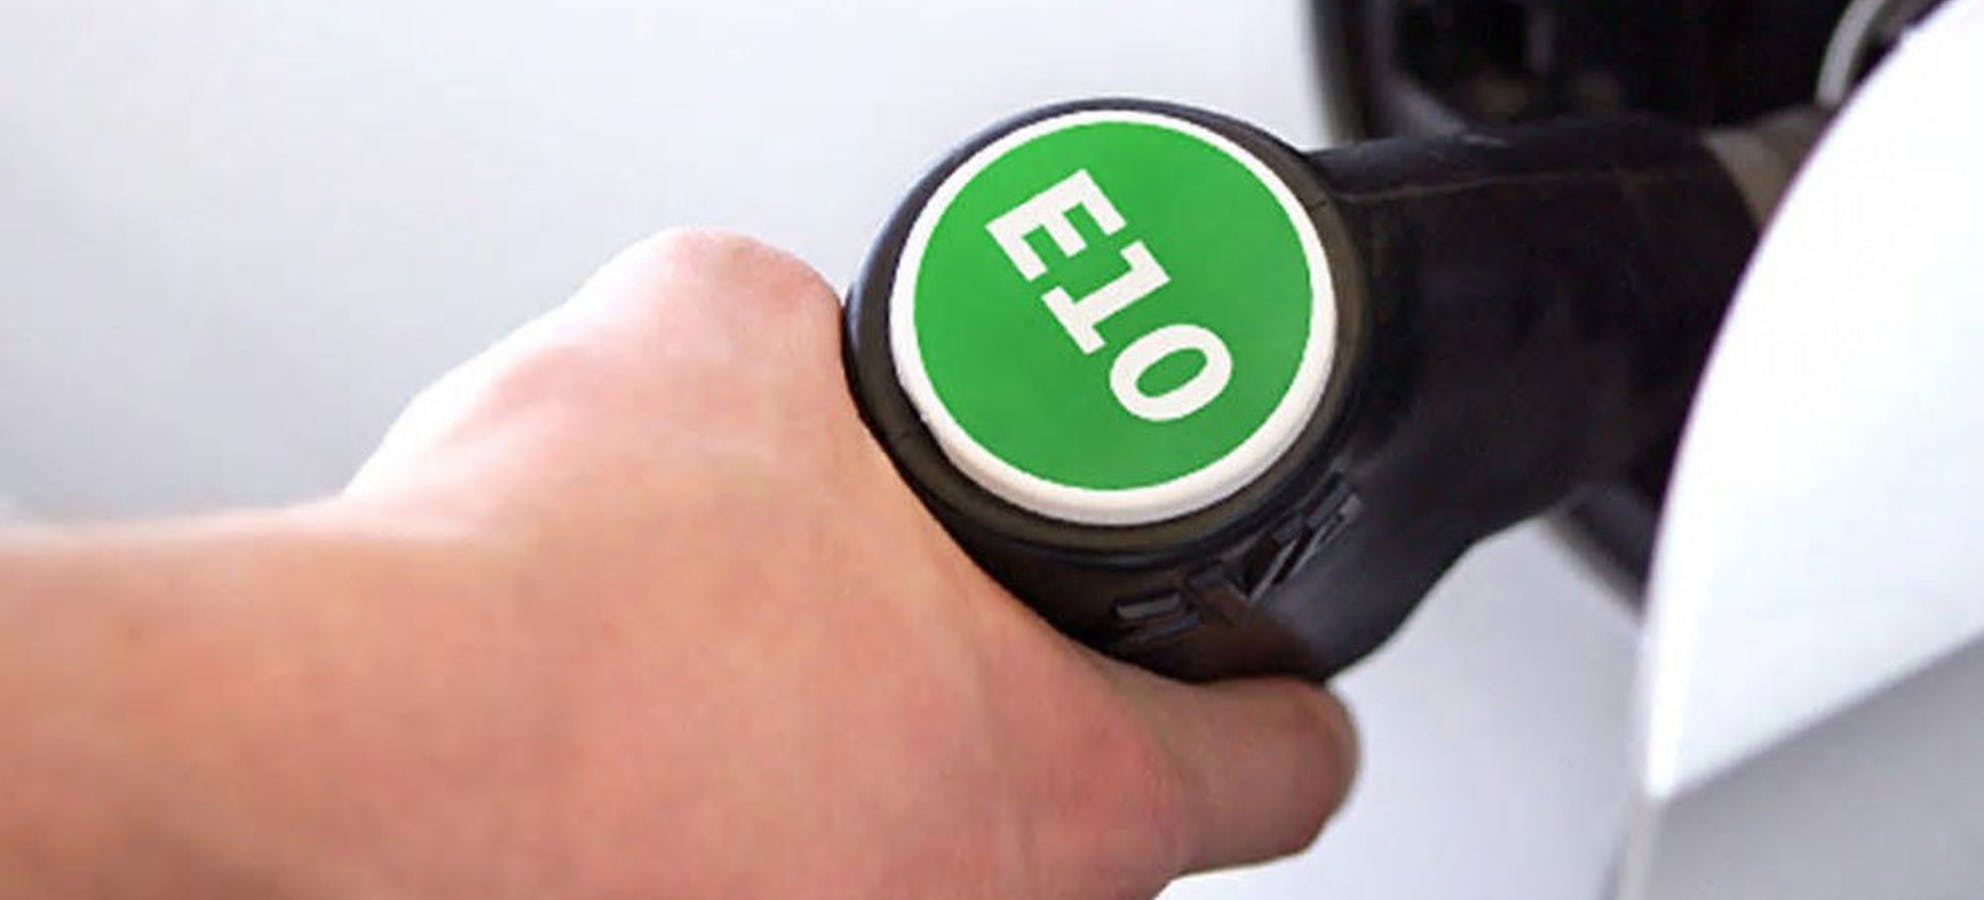 E10 tankolás – mi az E10 üzemanyag?